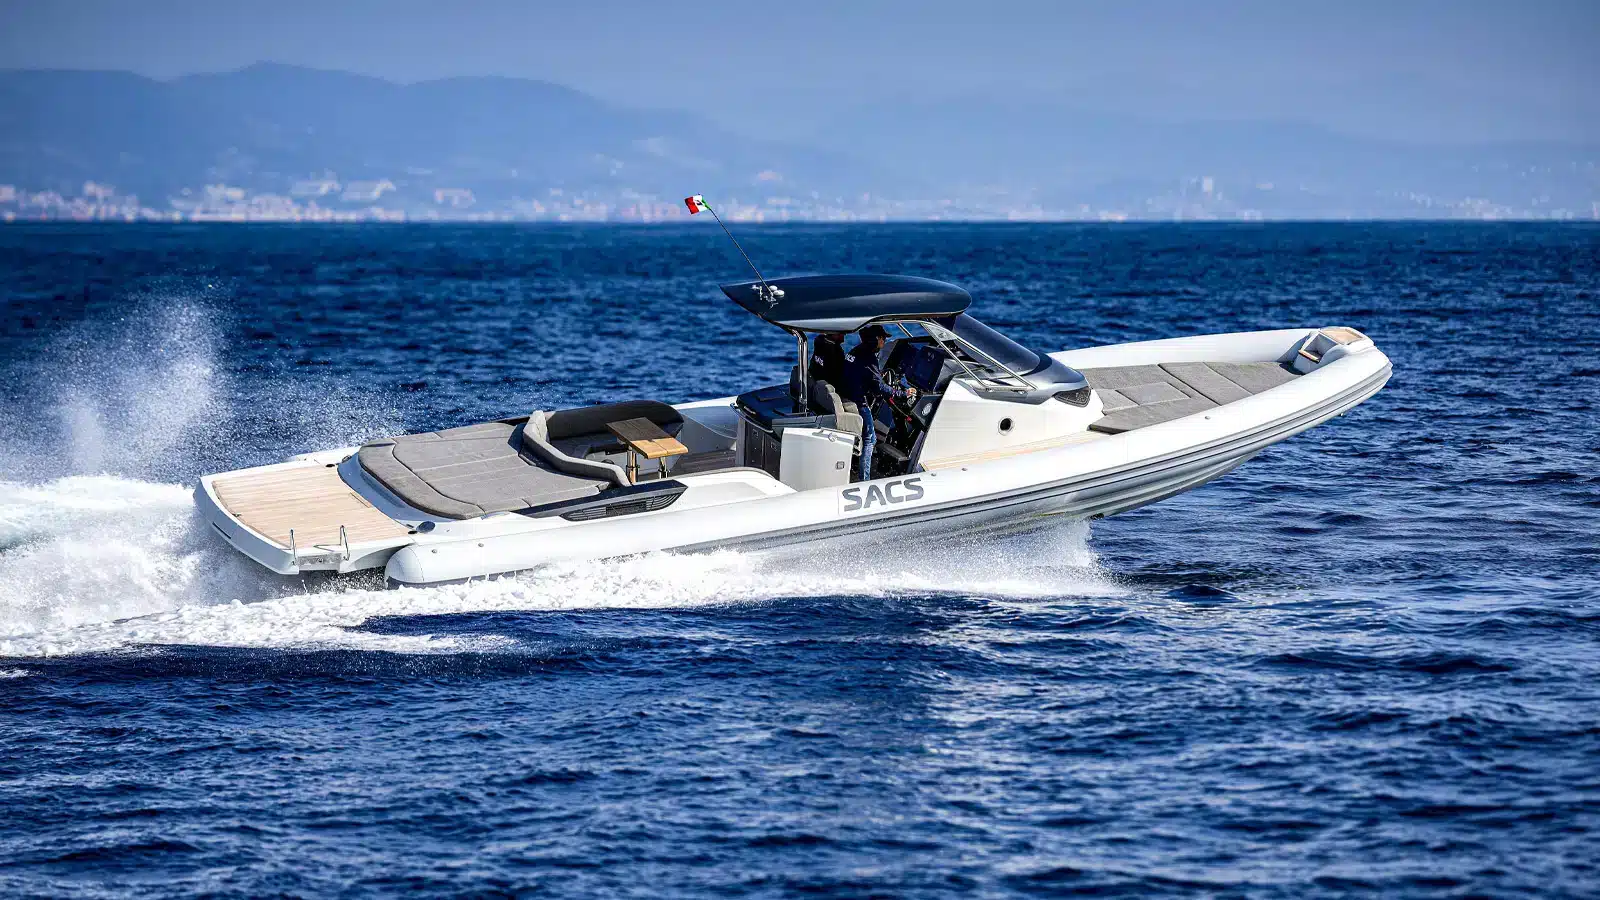 Sacs Tecnorib chooses Italian Yacht Store